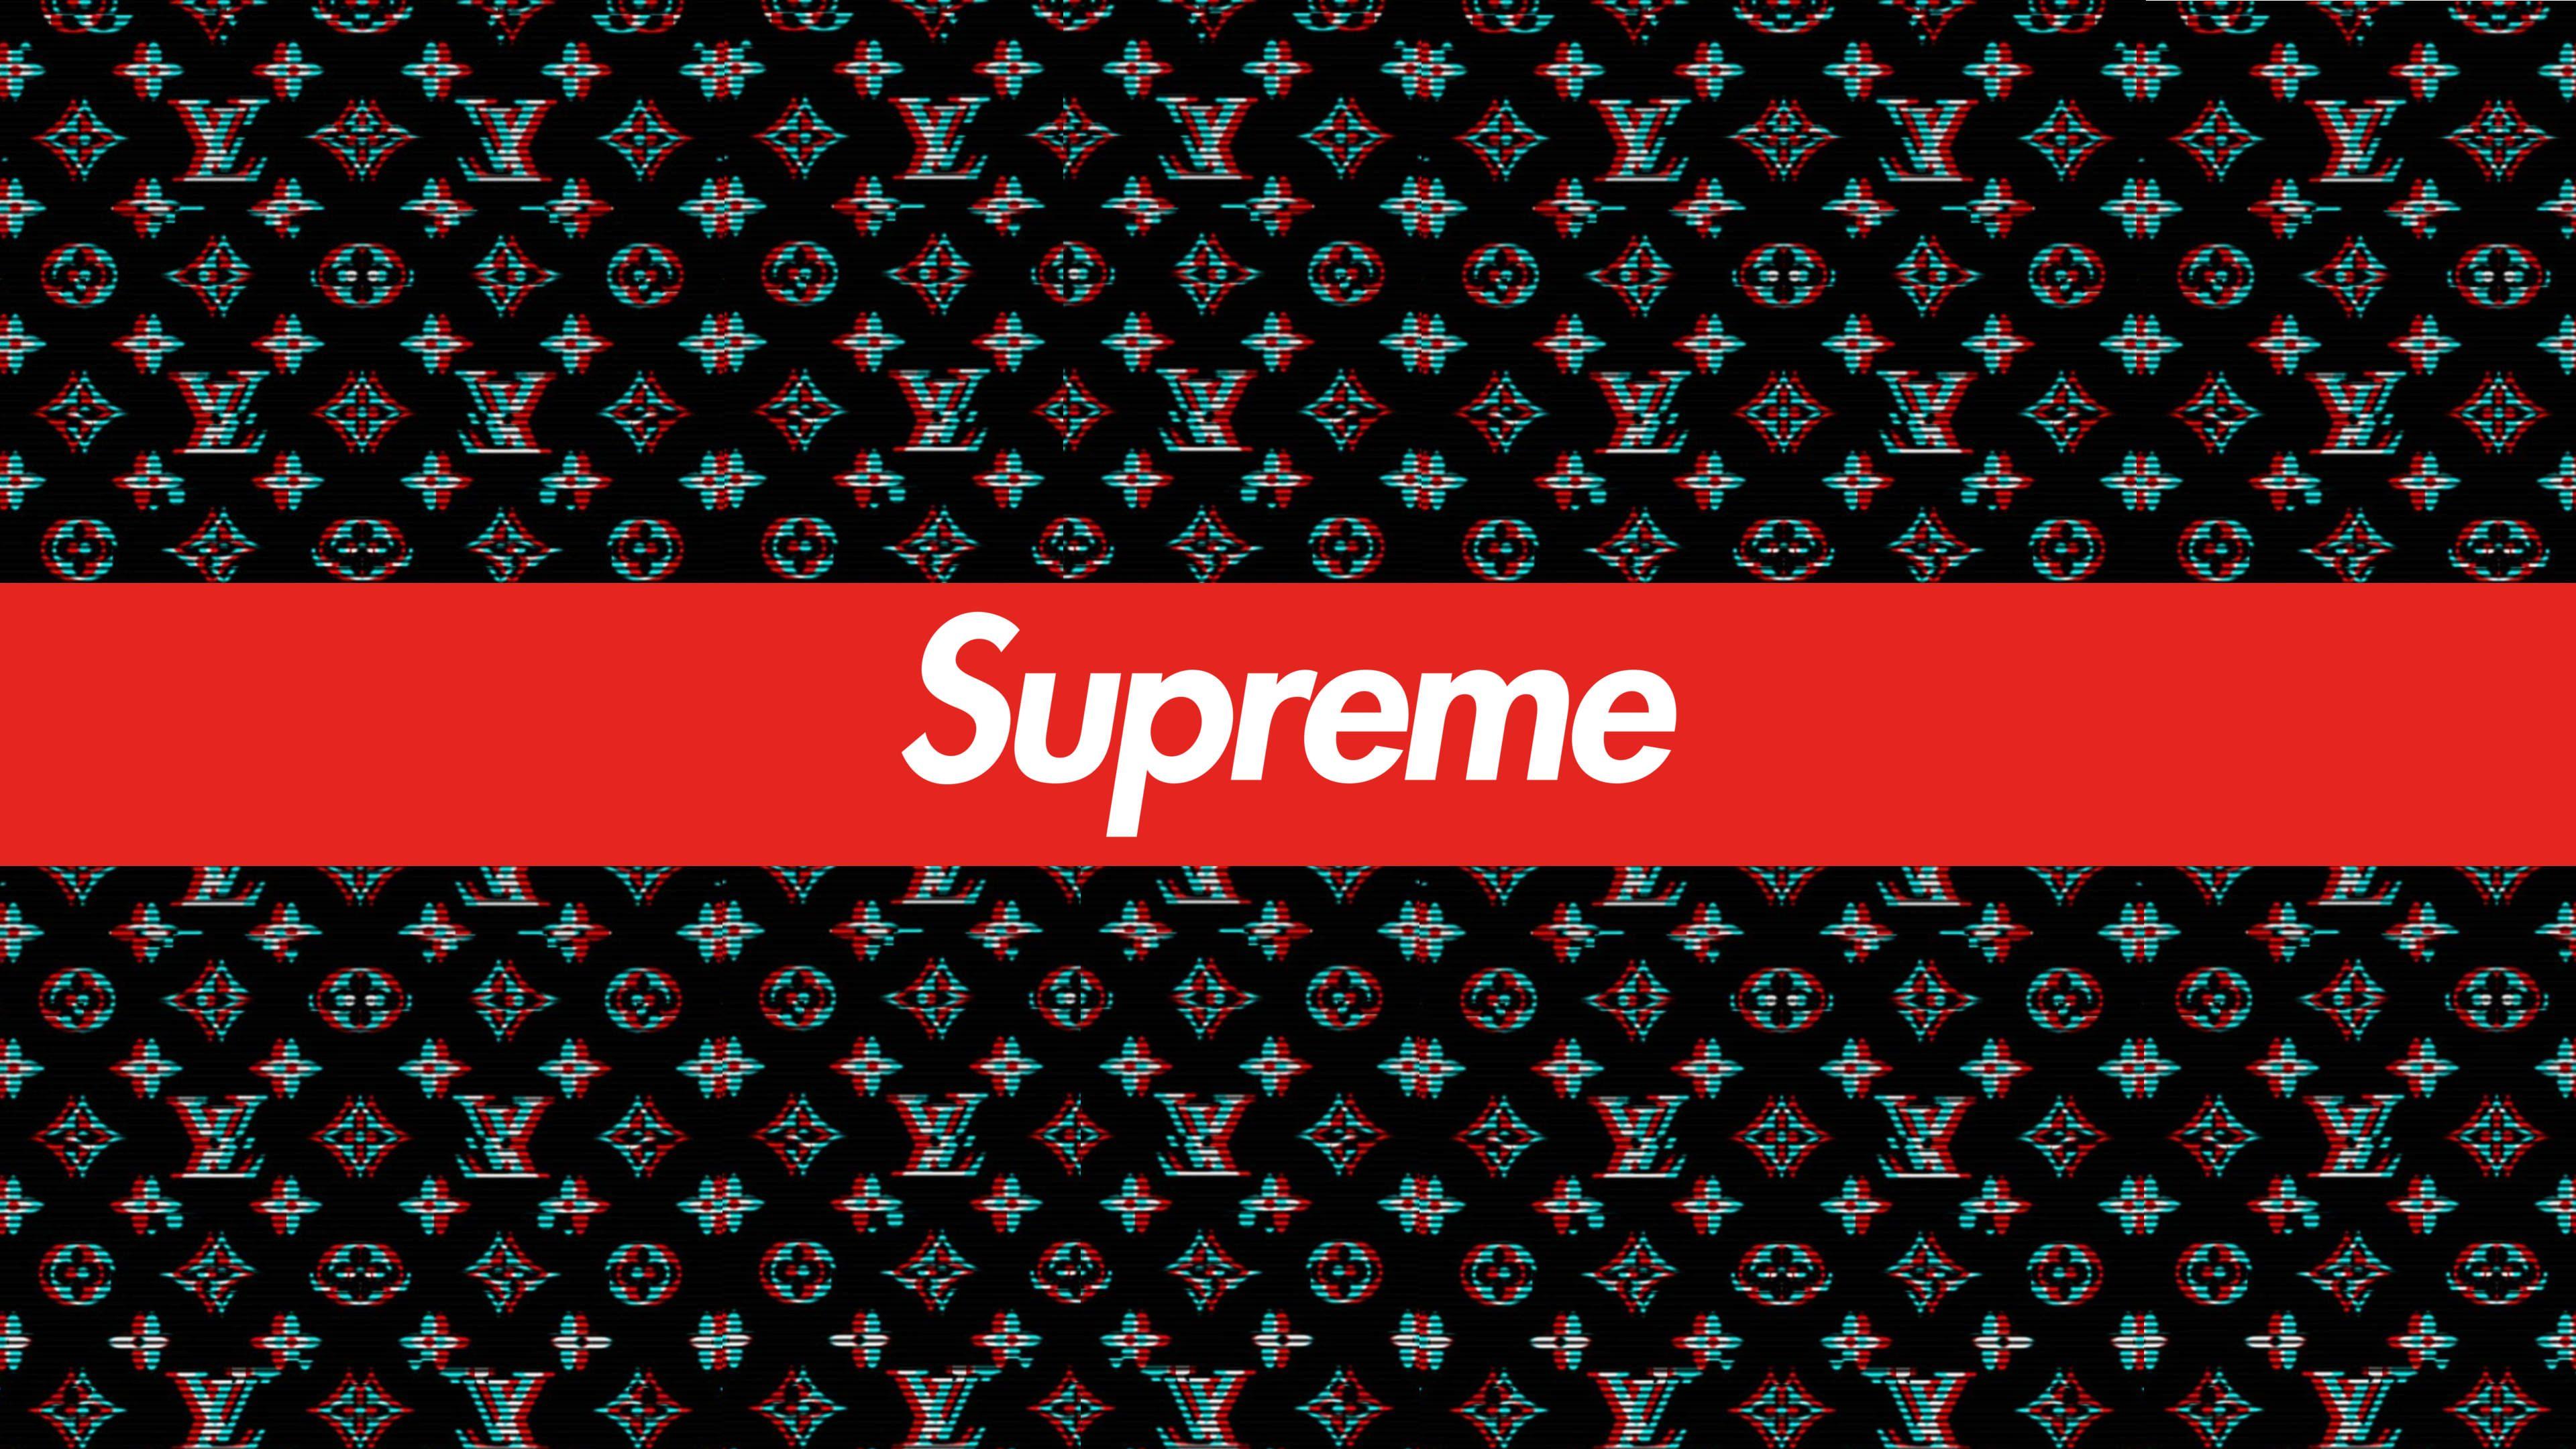 Supreme X LV Wallpapers - Wallpaper